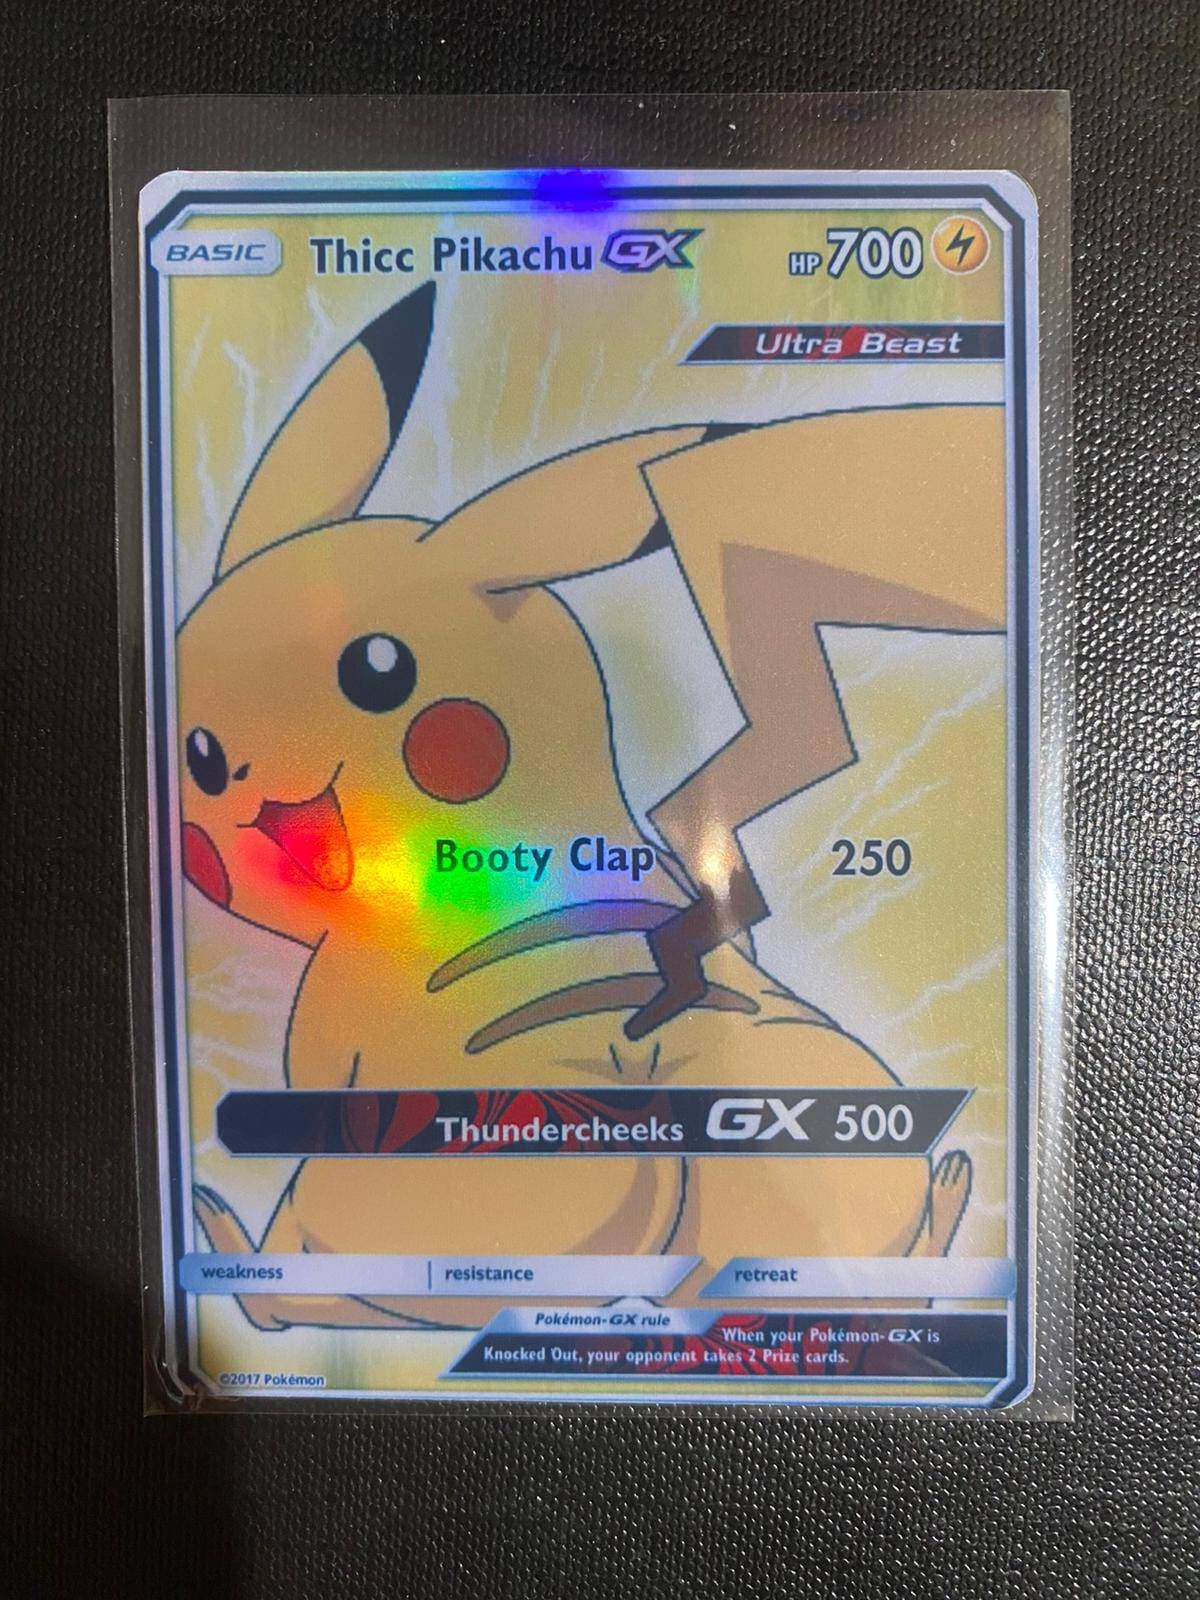 IIDVERT Pikachu Vmax Custom Metal Card?Rainbow Gold Indonesia